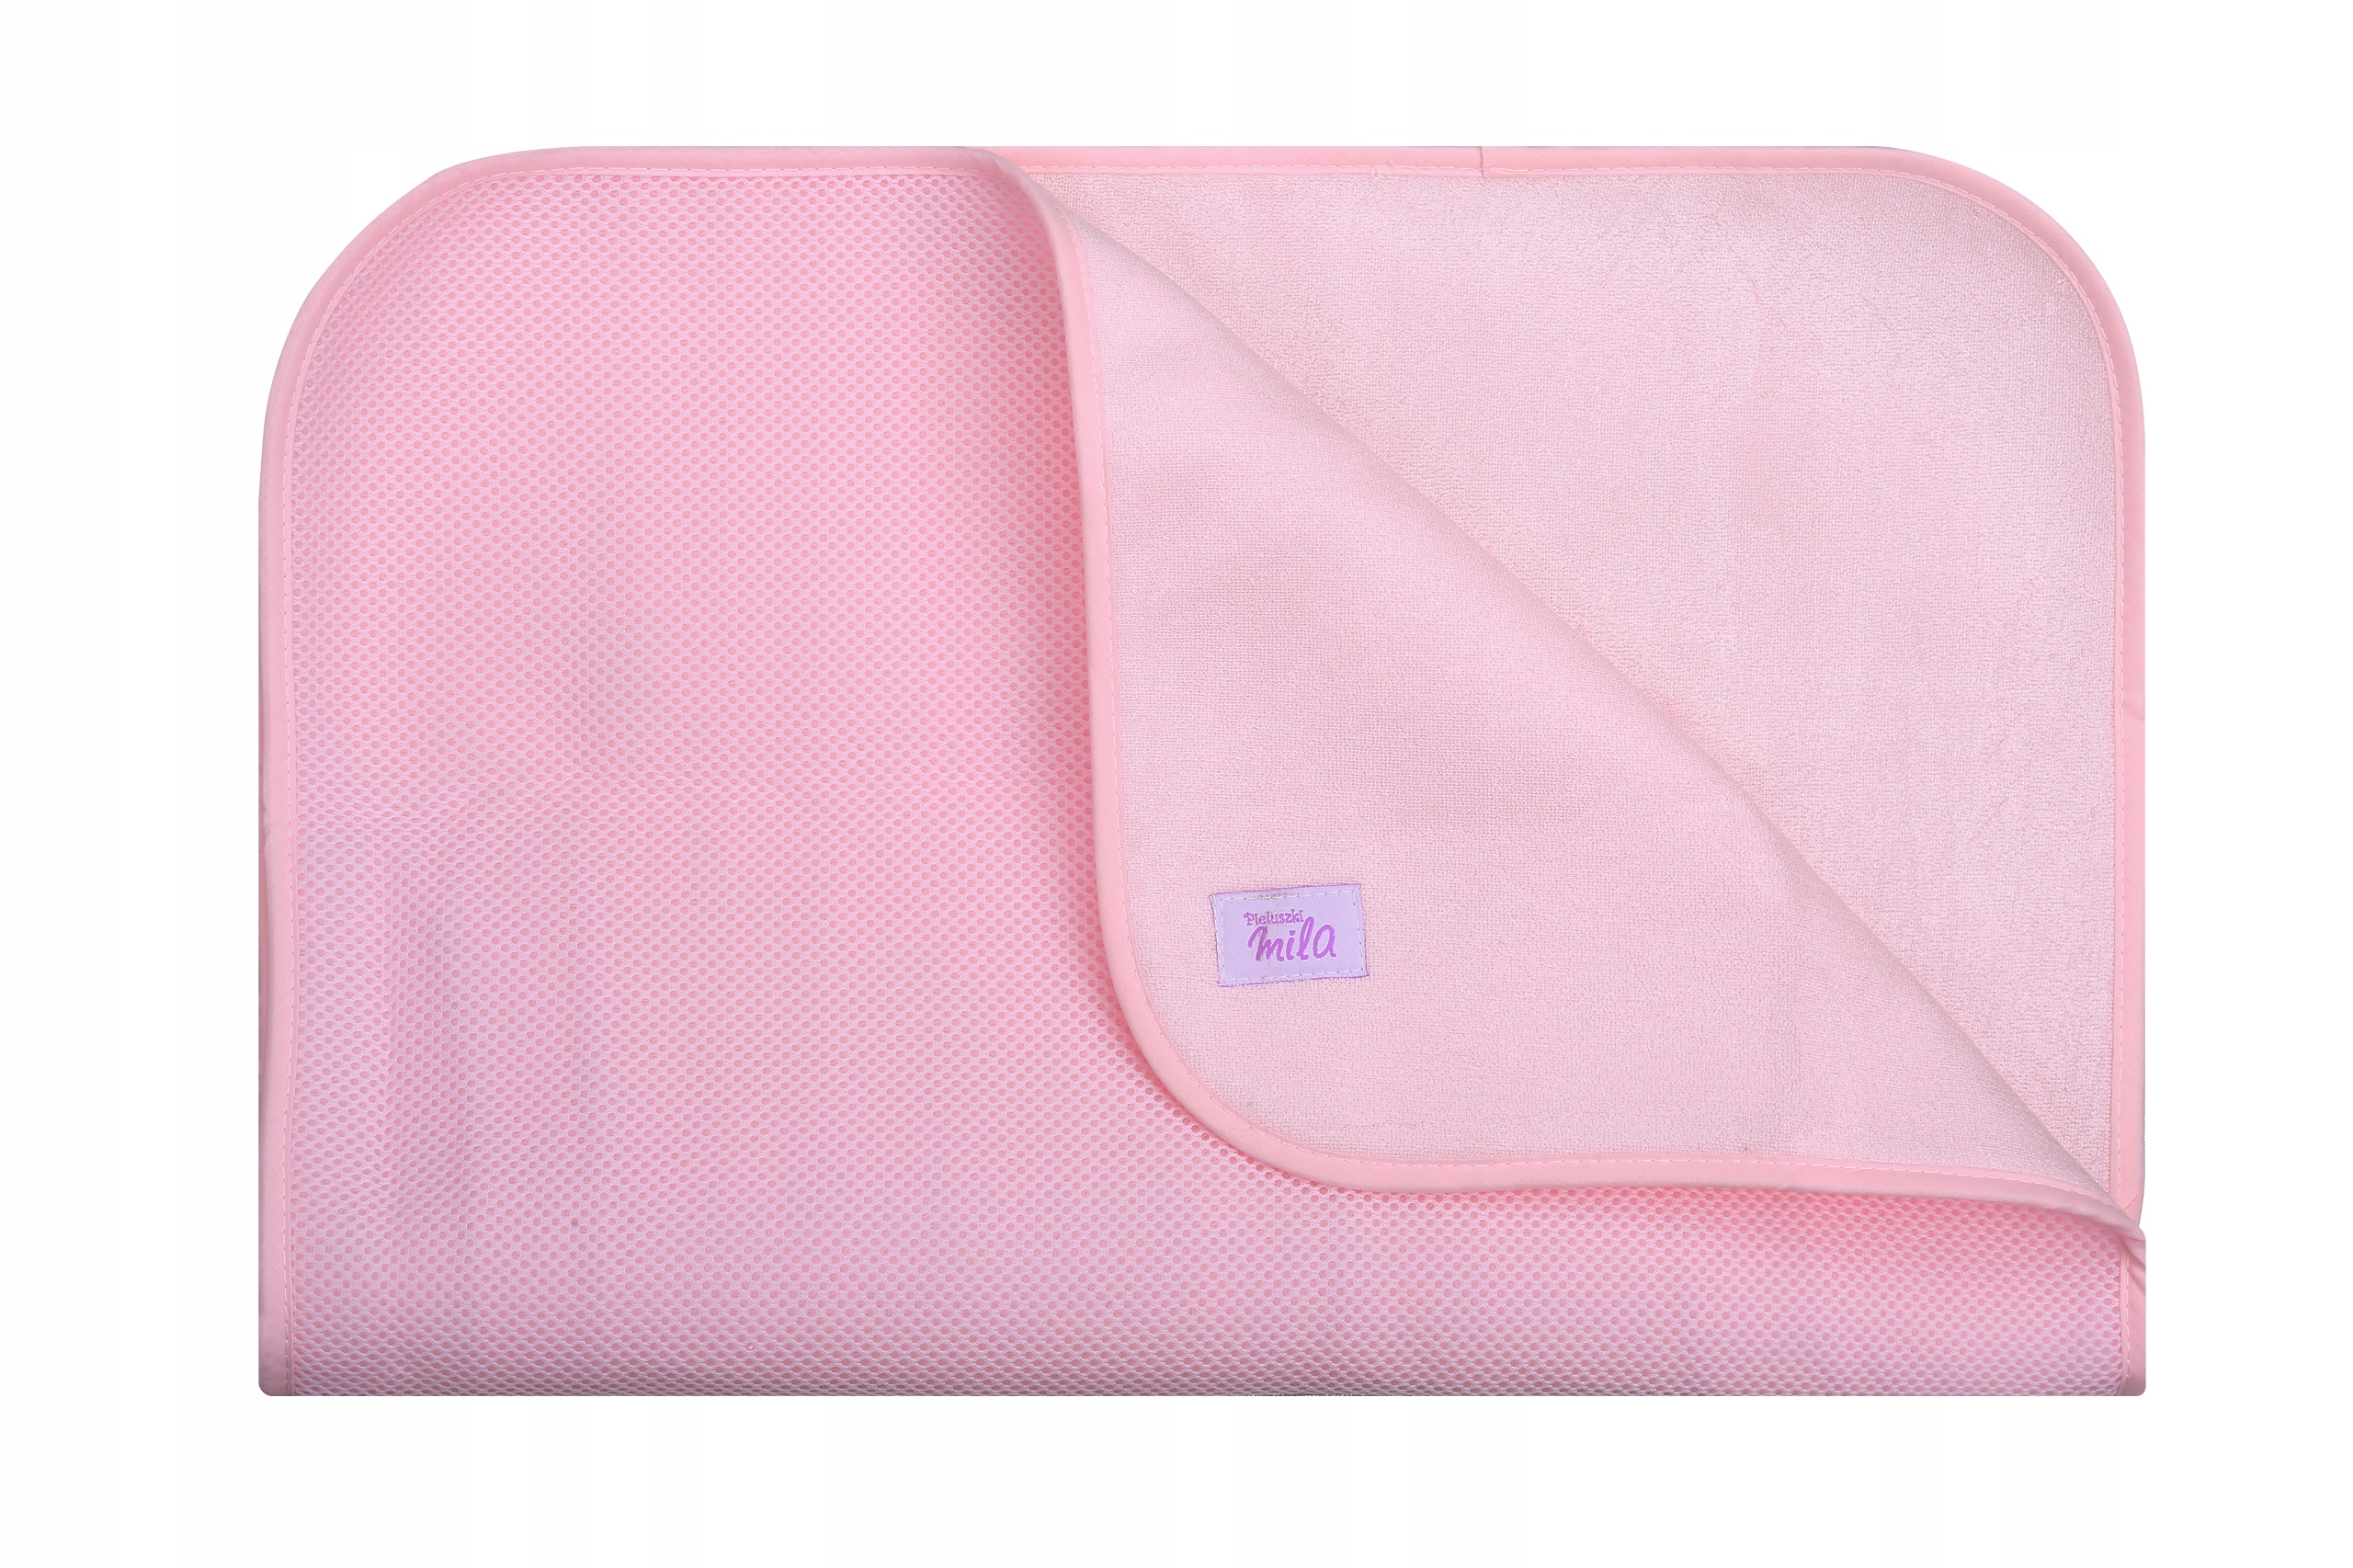 3dmesh пеленальный коврик, водонепроницаемый розовый